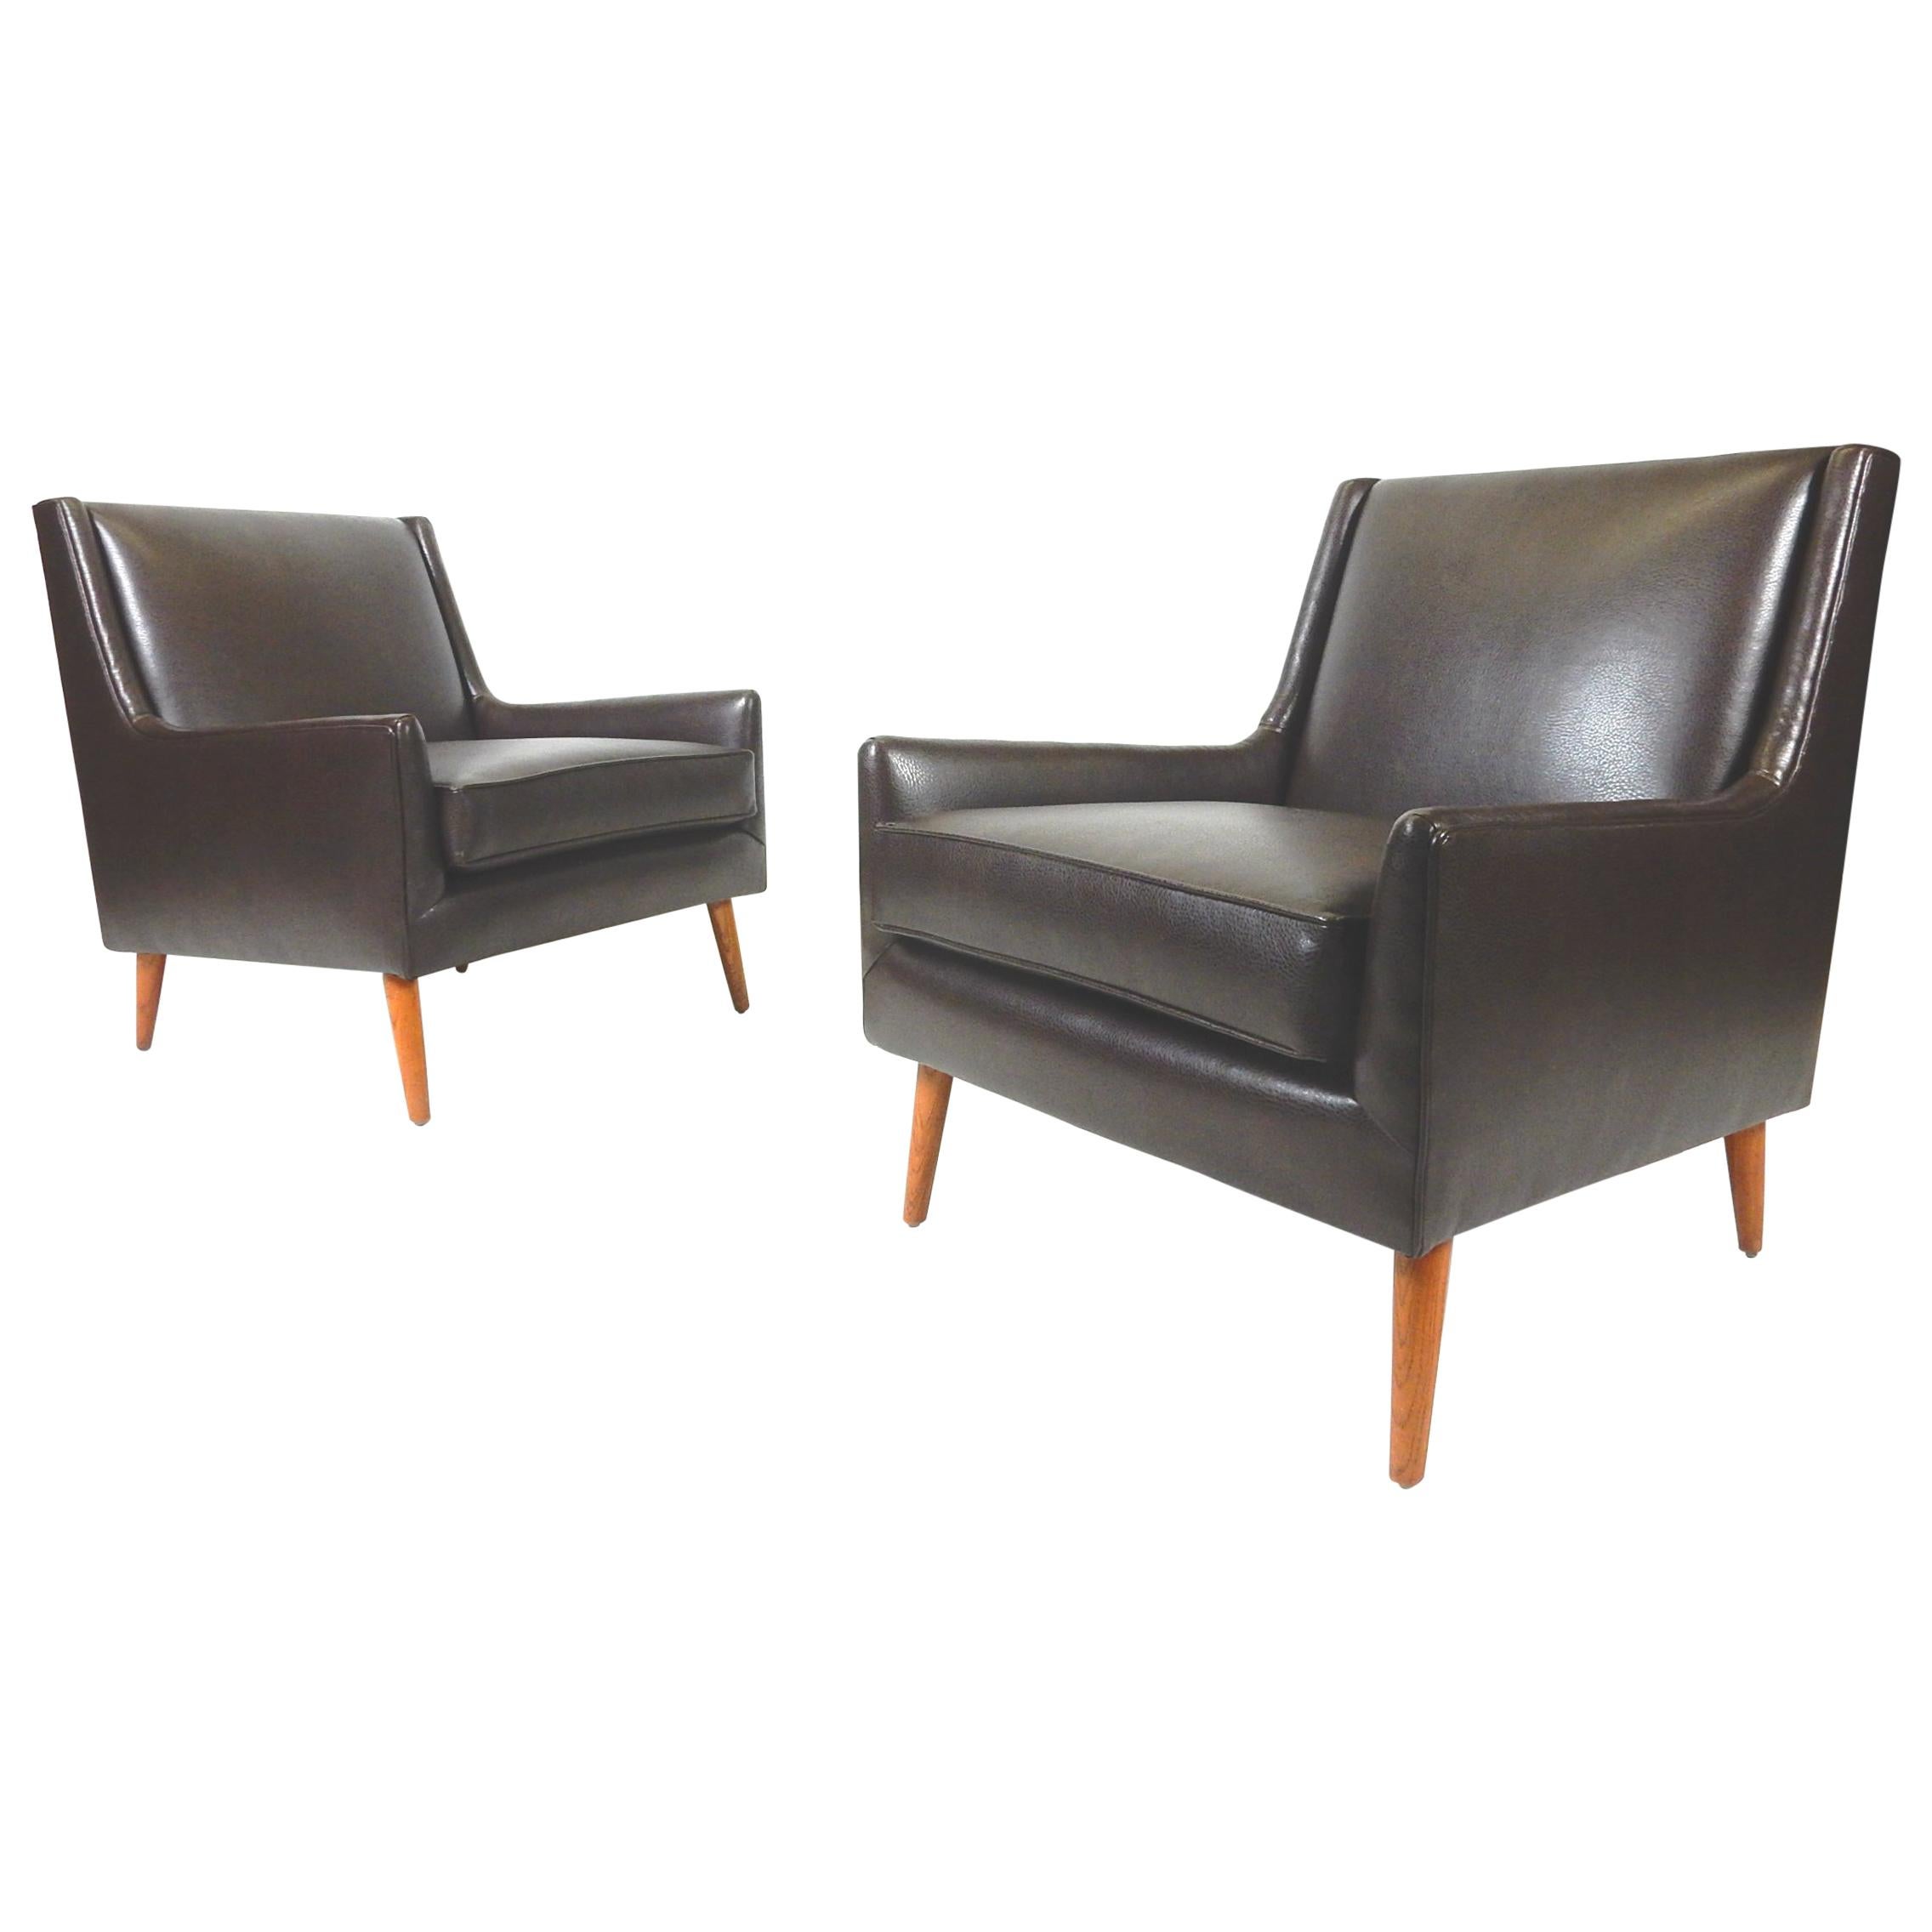 Incroyable paire de fauteuils de salon des années 1950 de style moderne du milieu du siècle qui ont été nouvellement recouverts d'un tissu d'ameublement.
Faux cuir fin et doux comme du beurre, de couleur marron chocolat.
Ils sont dans le style